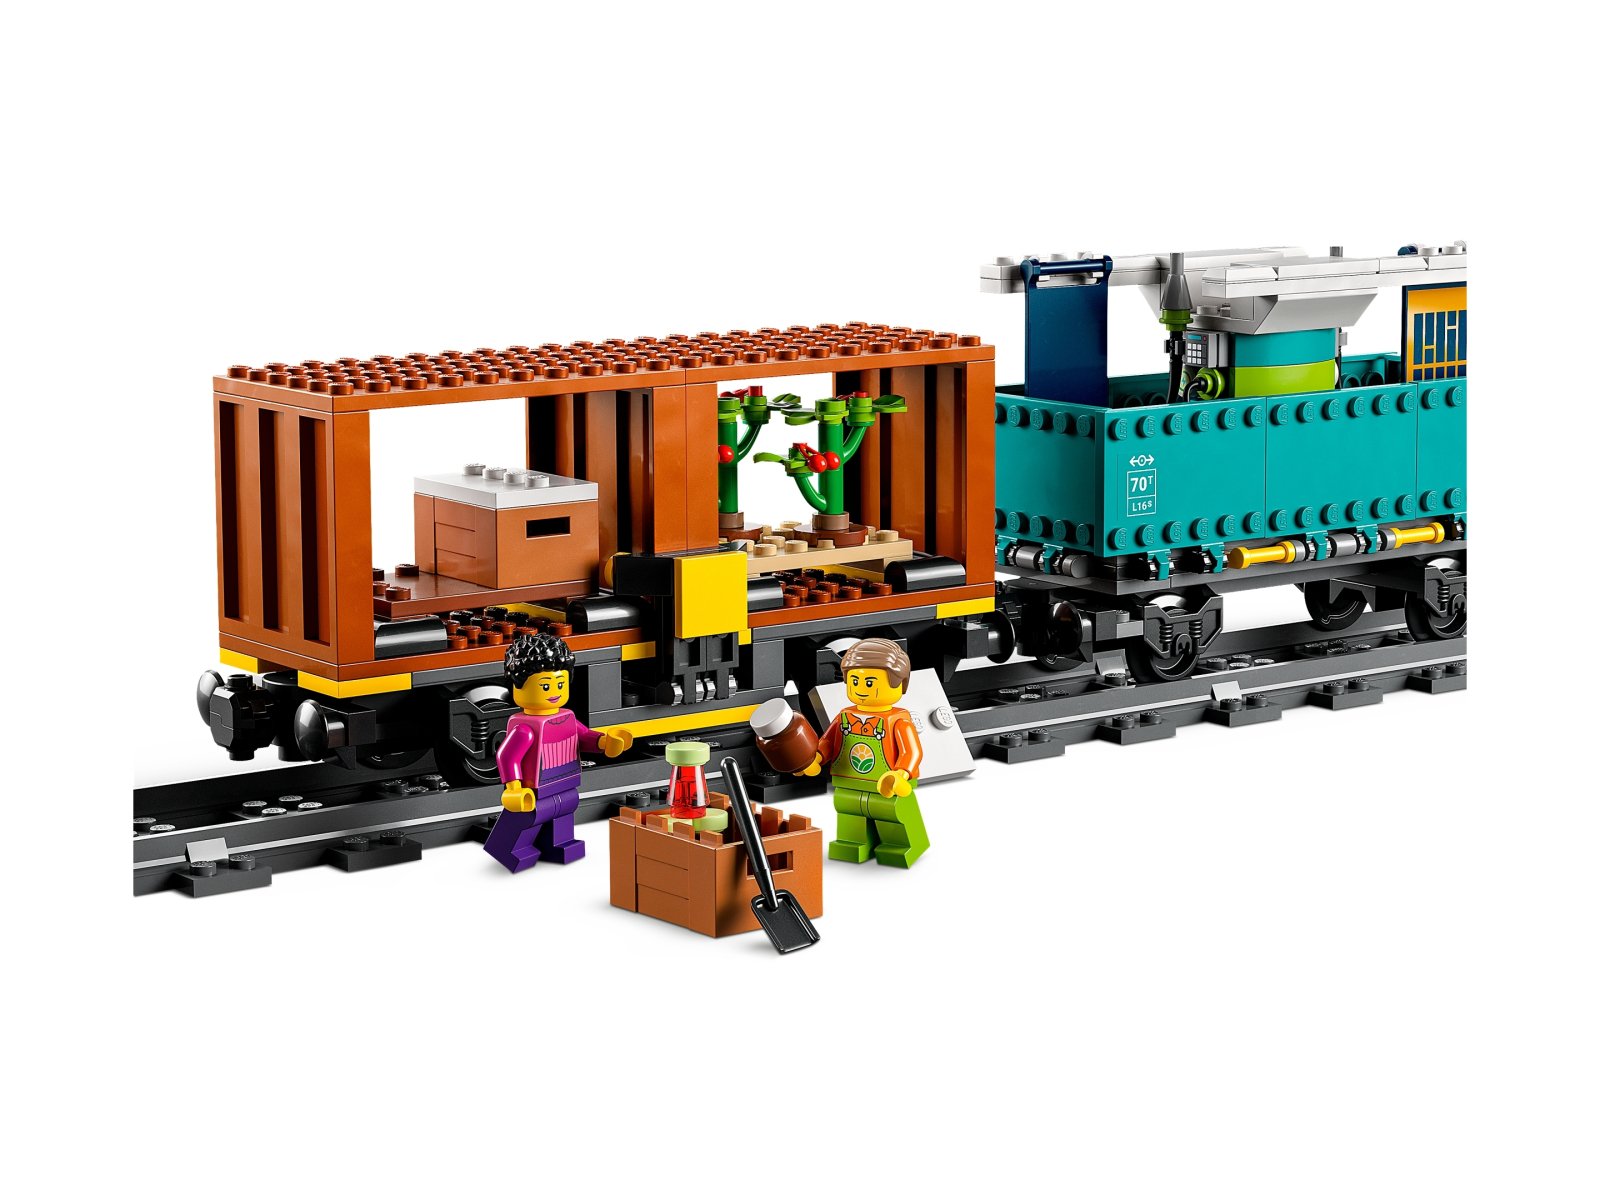 LEGO City Pociąg towarowy 60336